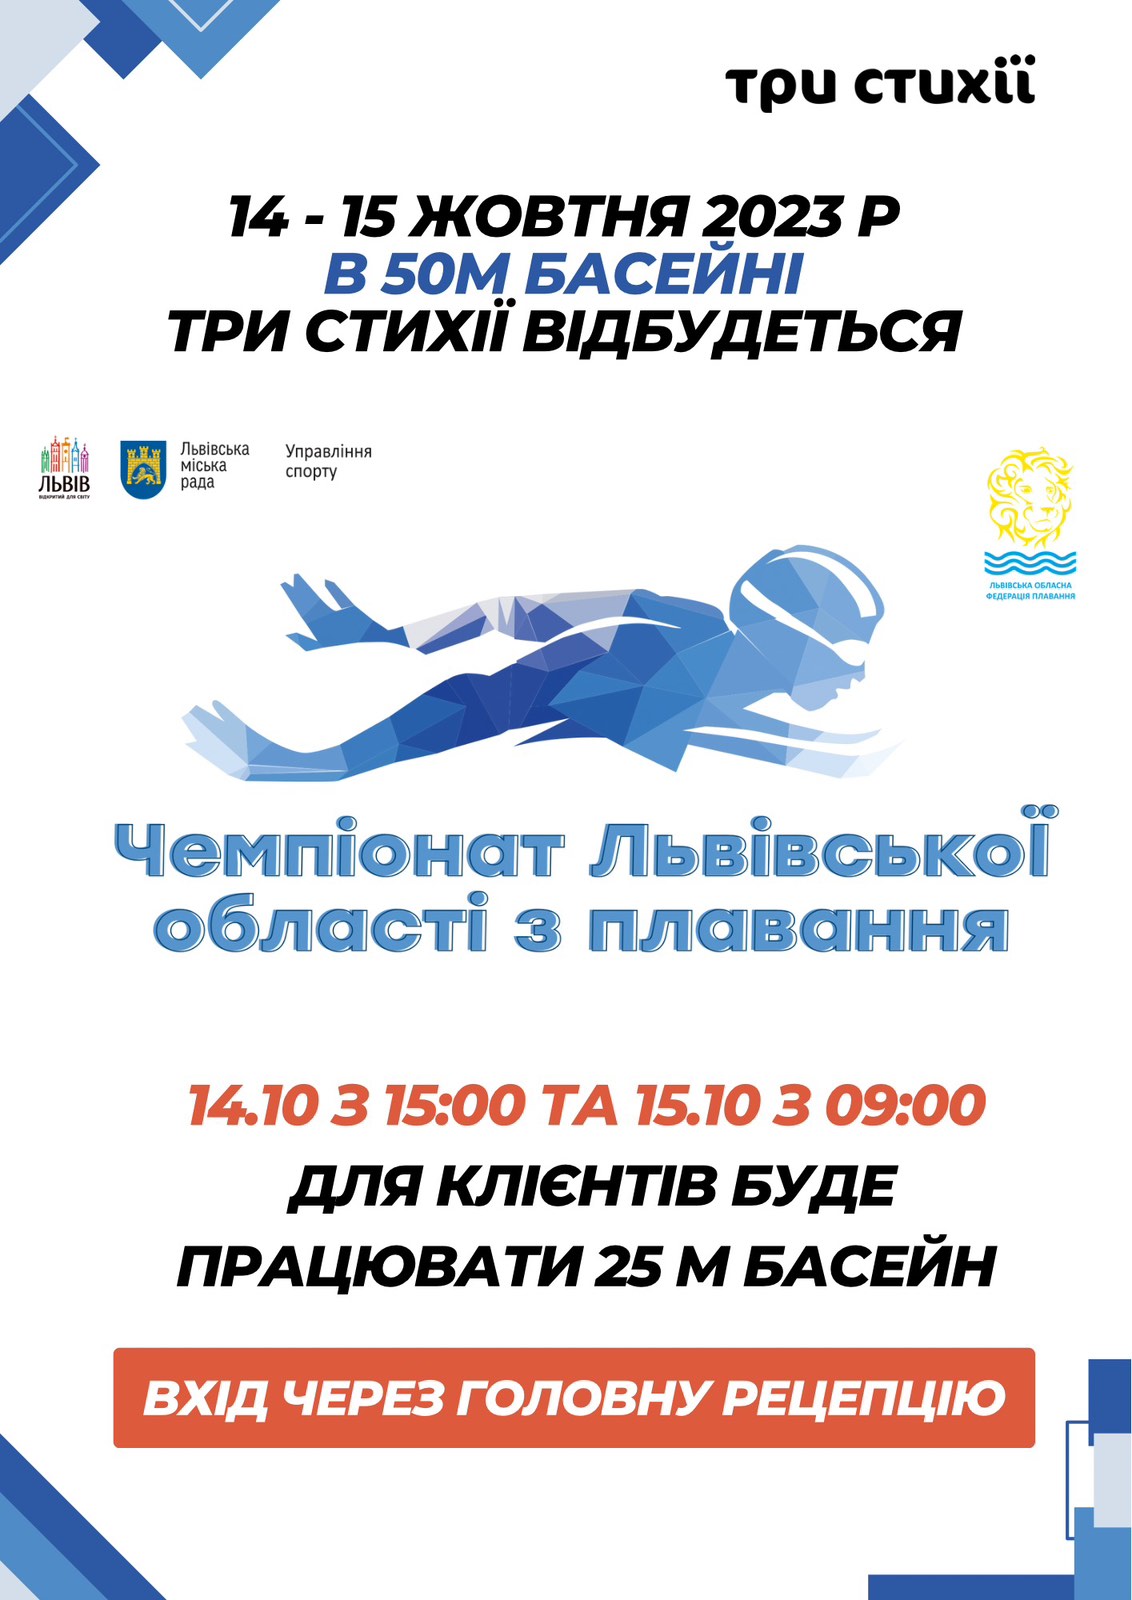 14 - 15 жовтня в 50 м басейні "ТРИ СТИХІЇ" відбудеться Чемпіонат Львівської області з плавання